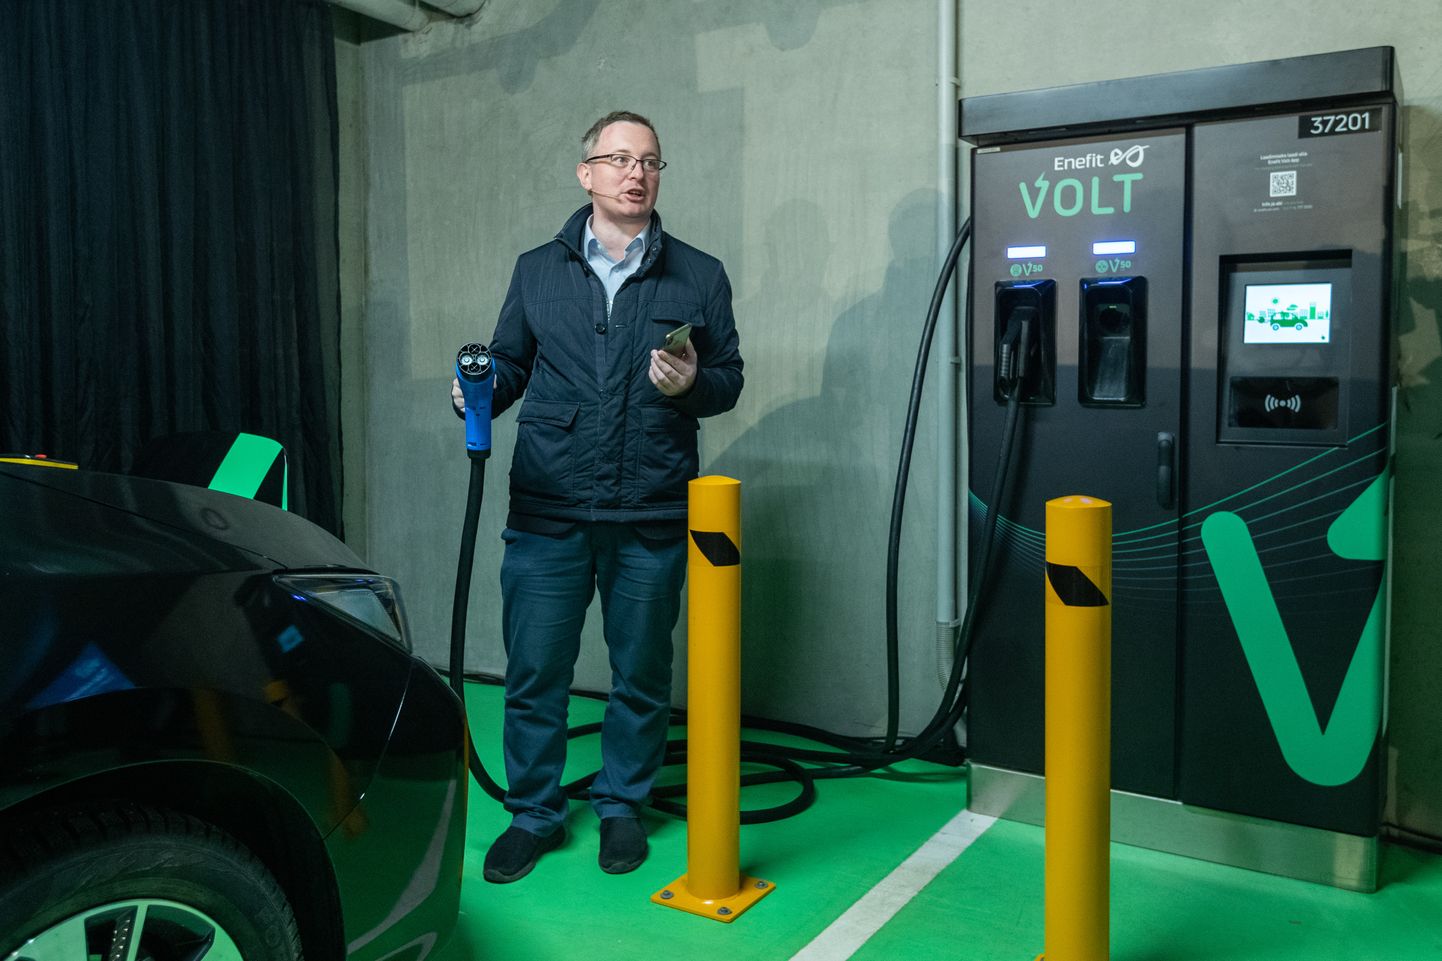 Enefit Volt 2 elektriauode laadija avamine Ülemiste keskuse parklas. Pildil Eesti Energia juhatuse liige projektide, tehnoloogia ja uue äri valdkonnas Margus Vals.